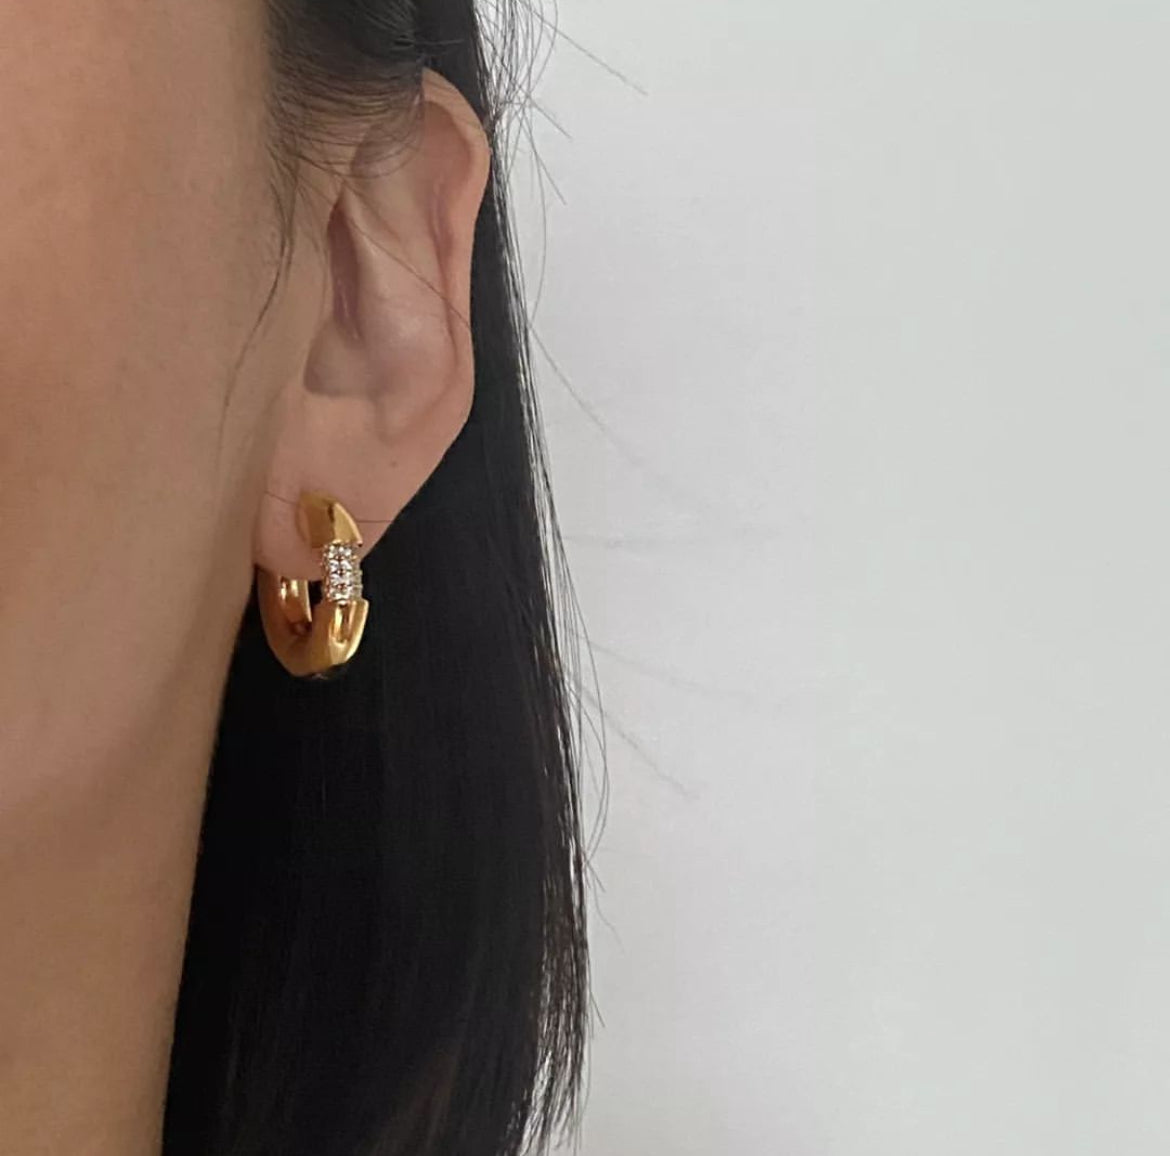 MoD Earrings in Gold